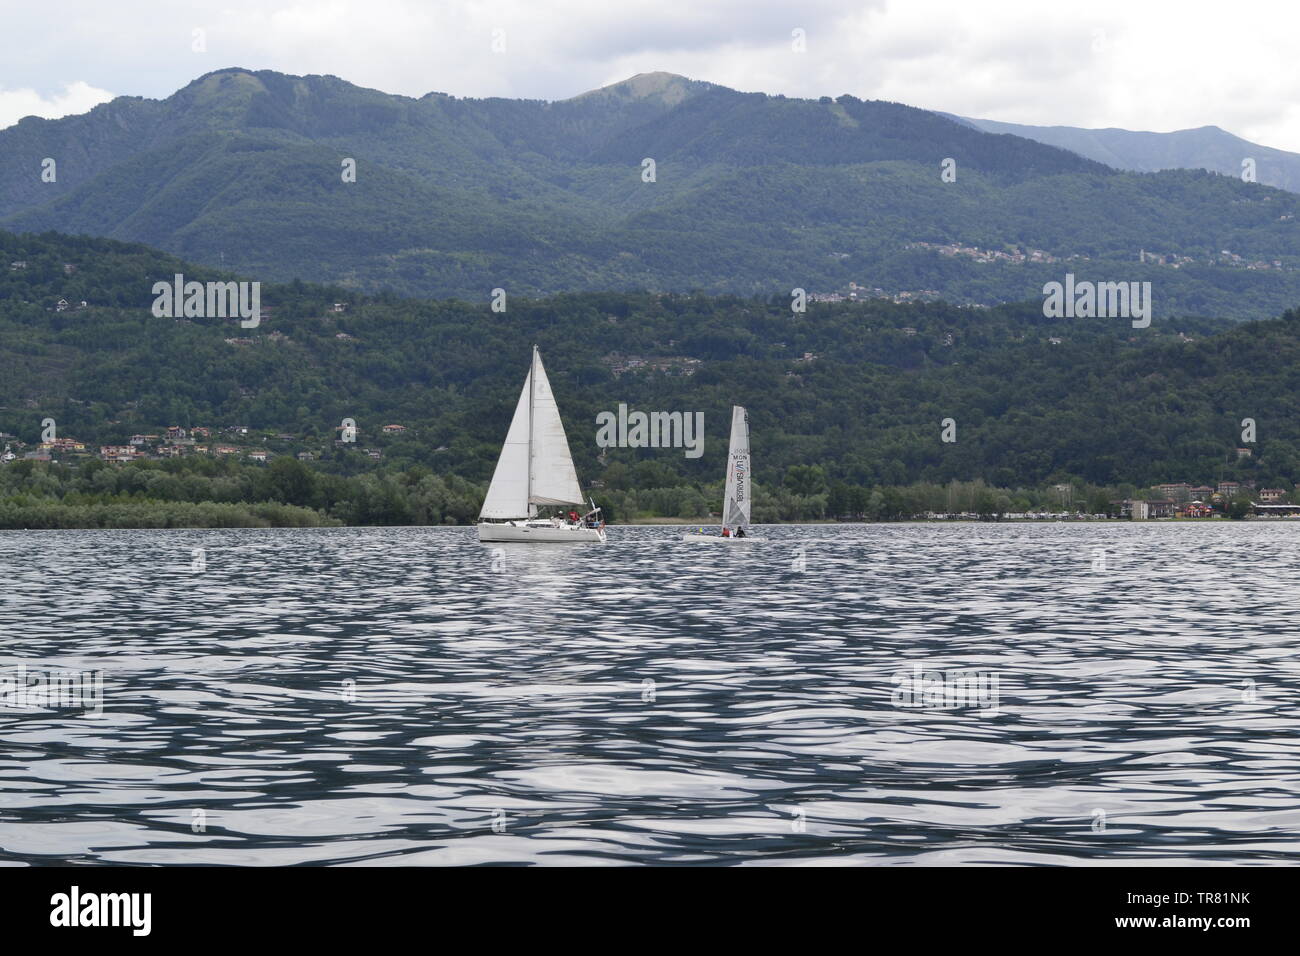 Lago Maggiore / Italien / Fluss / Aussicht / Boromäische Inseln / Isolo Madre / Tresa / Melezza Lake Maggiore / Italy / River / View / Boromean Island Stock Photo